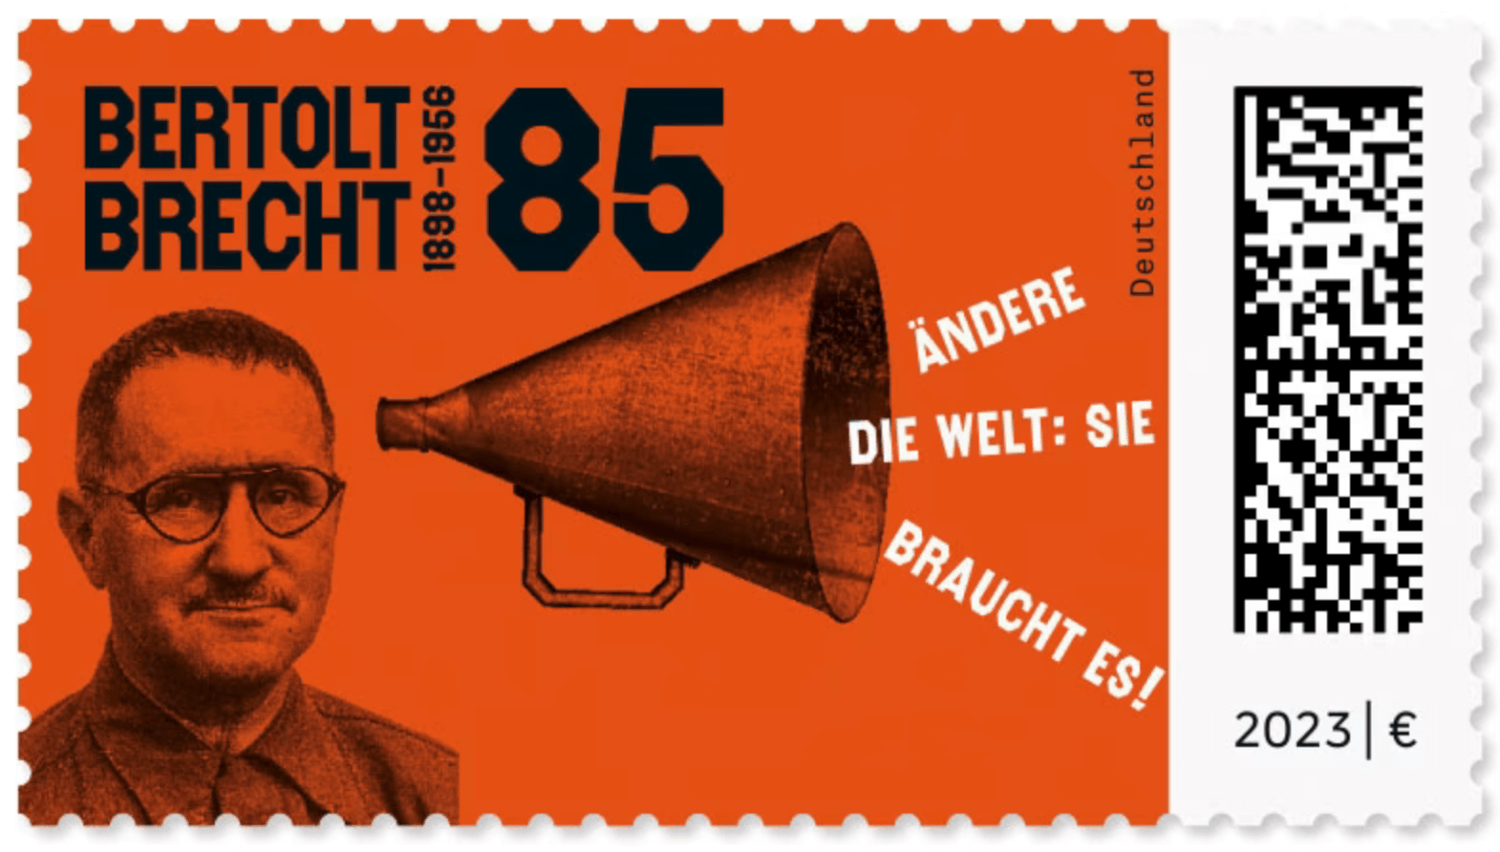 Bertolt Brecht auf einer Briefmarke zum 125. Geburtstag